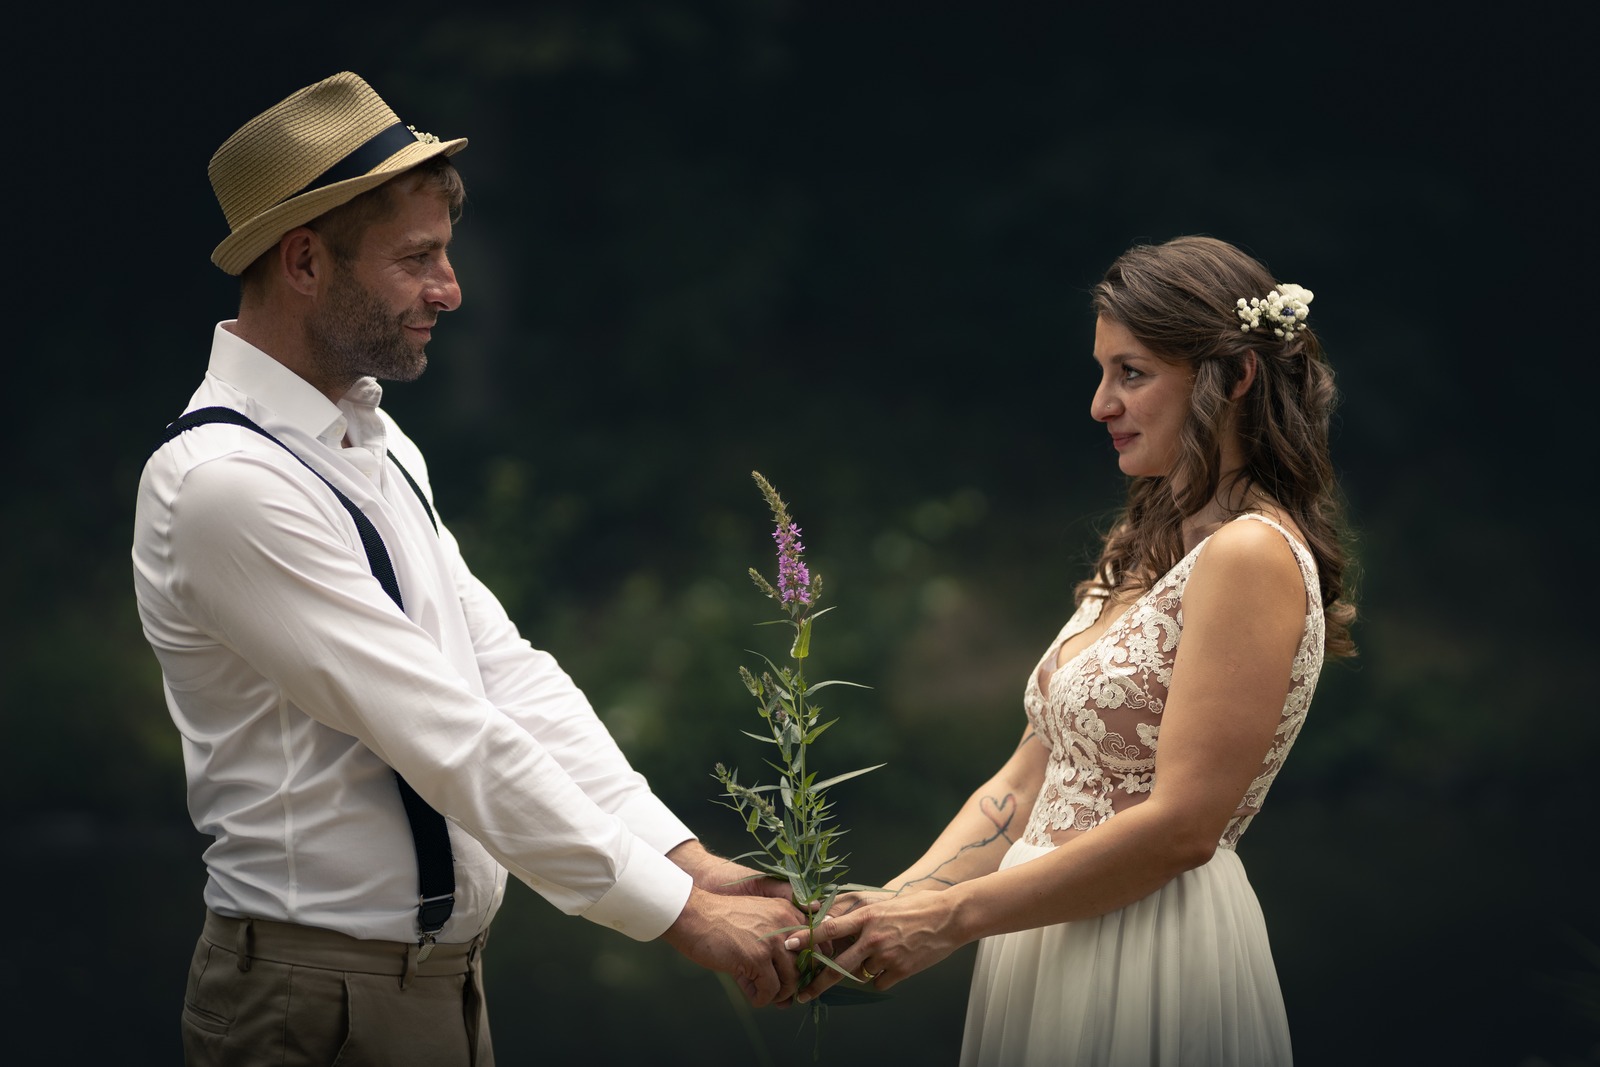 Svatba Nový Knín nedaleko Dobříše - ženich a nevěsta drží kytičku